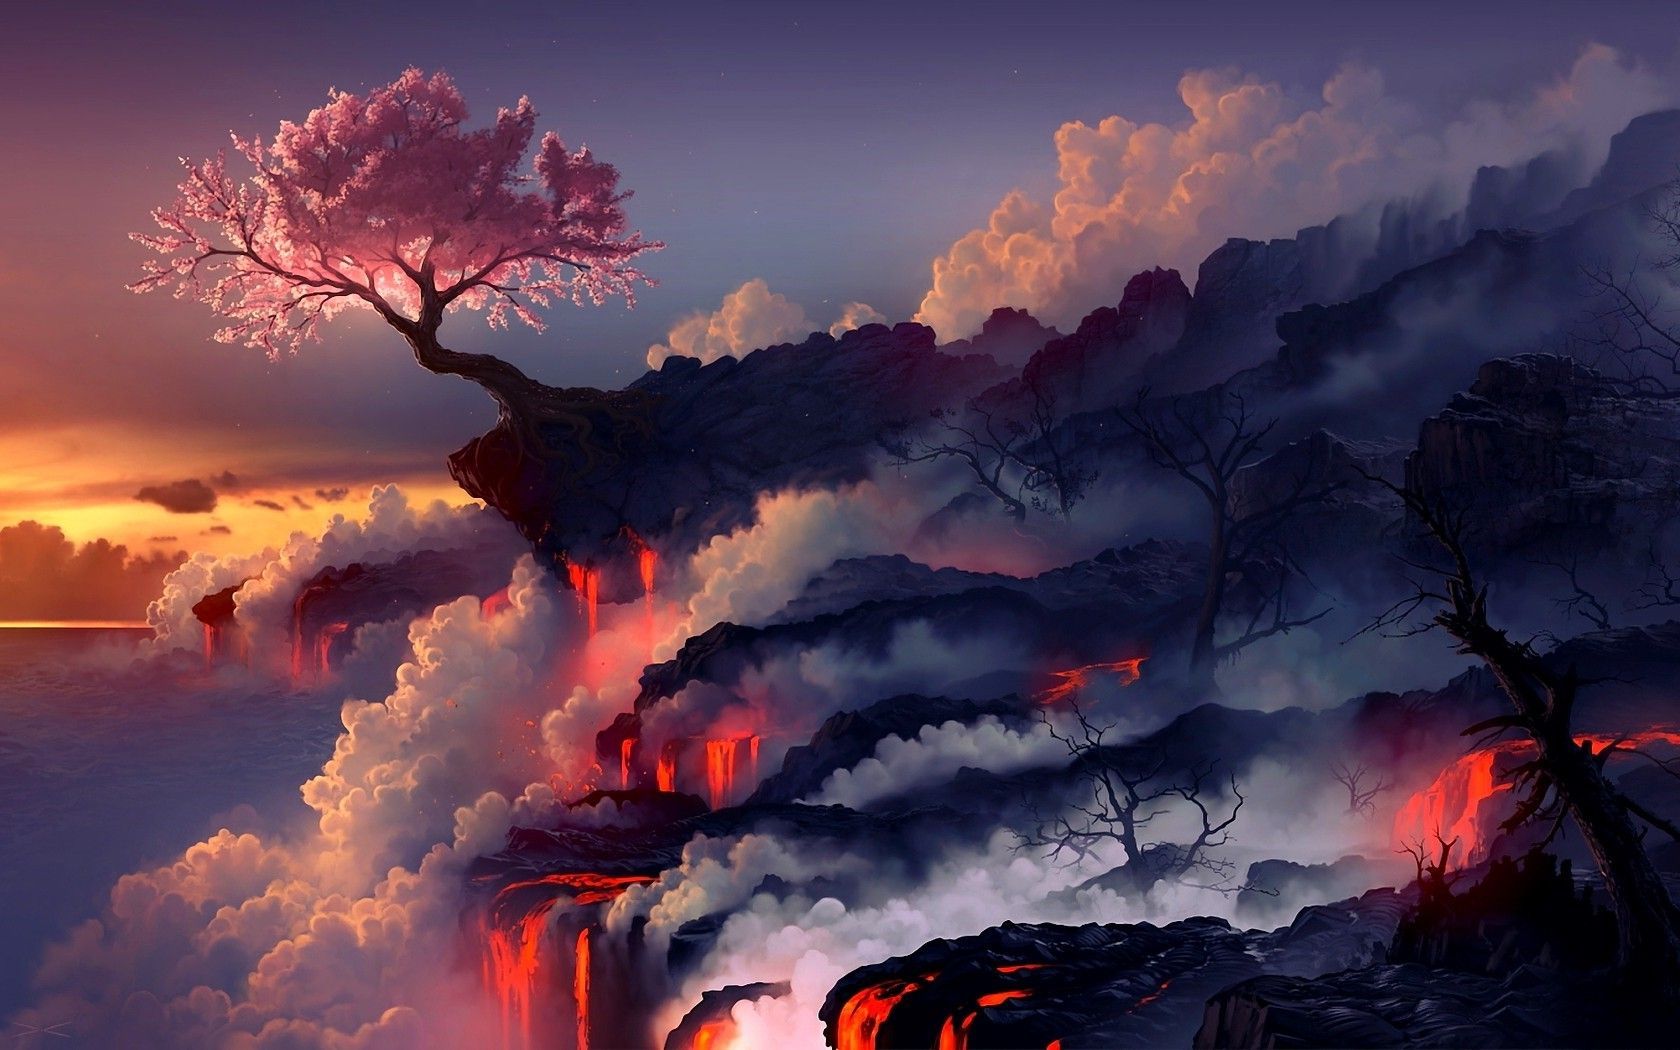 رویایی ترین والپیپر فانتزی درخت پرشکوفه گیلاس بین انبوهی از ابر و مواد مذاب آتشفشانی